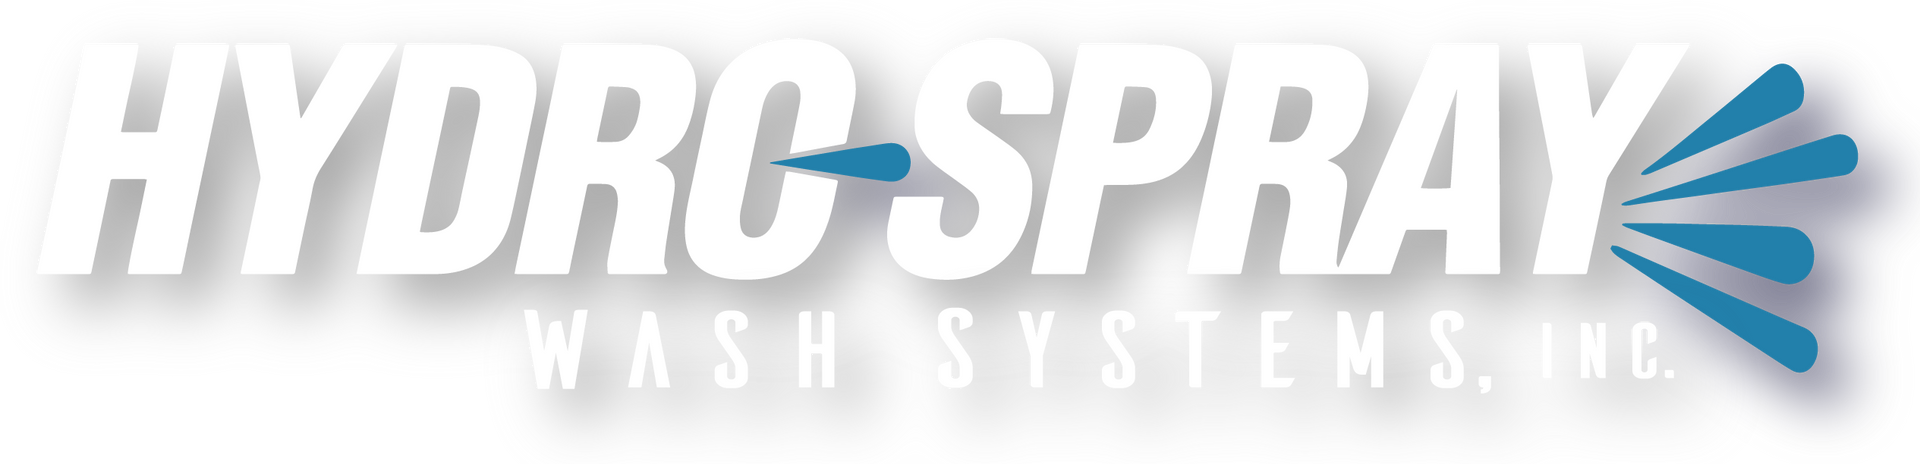 Hydro-Spray Wash Systems, Inc. Logo